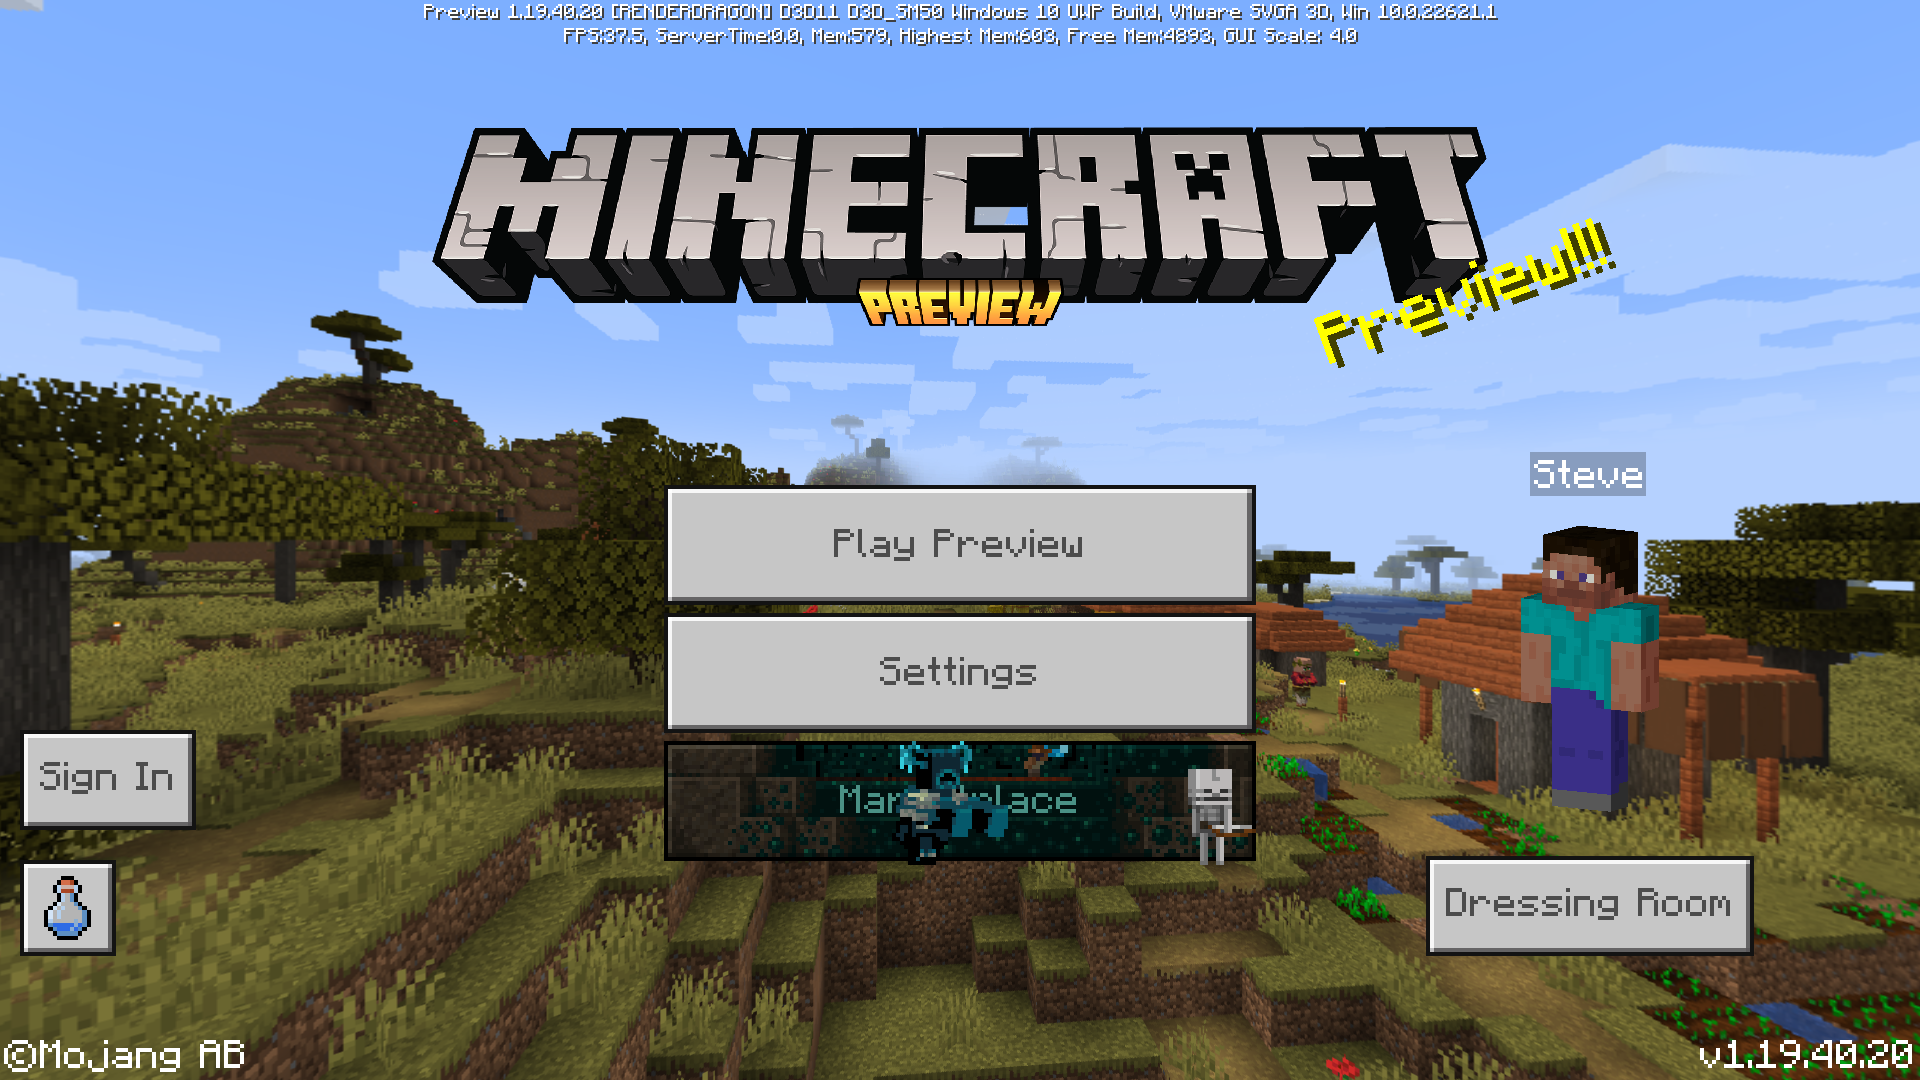 Minecraft PE 1.20.40.20 Bedrock!! 